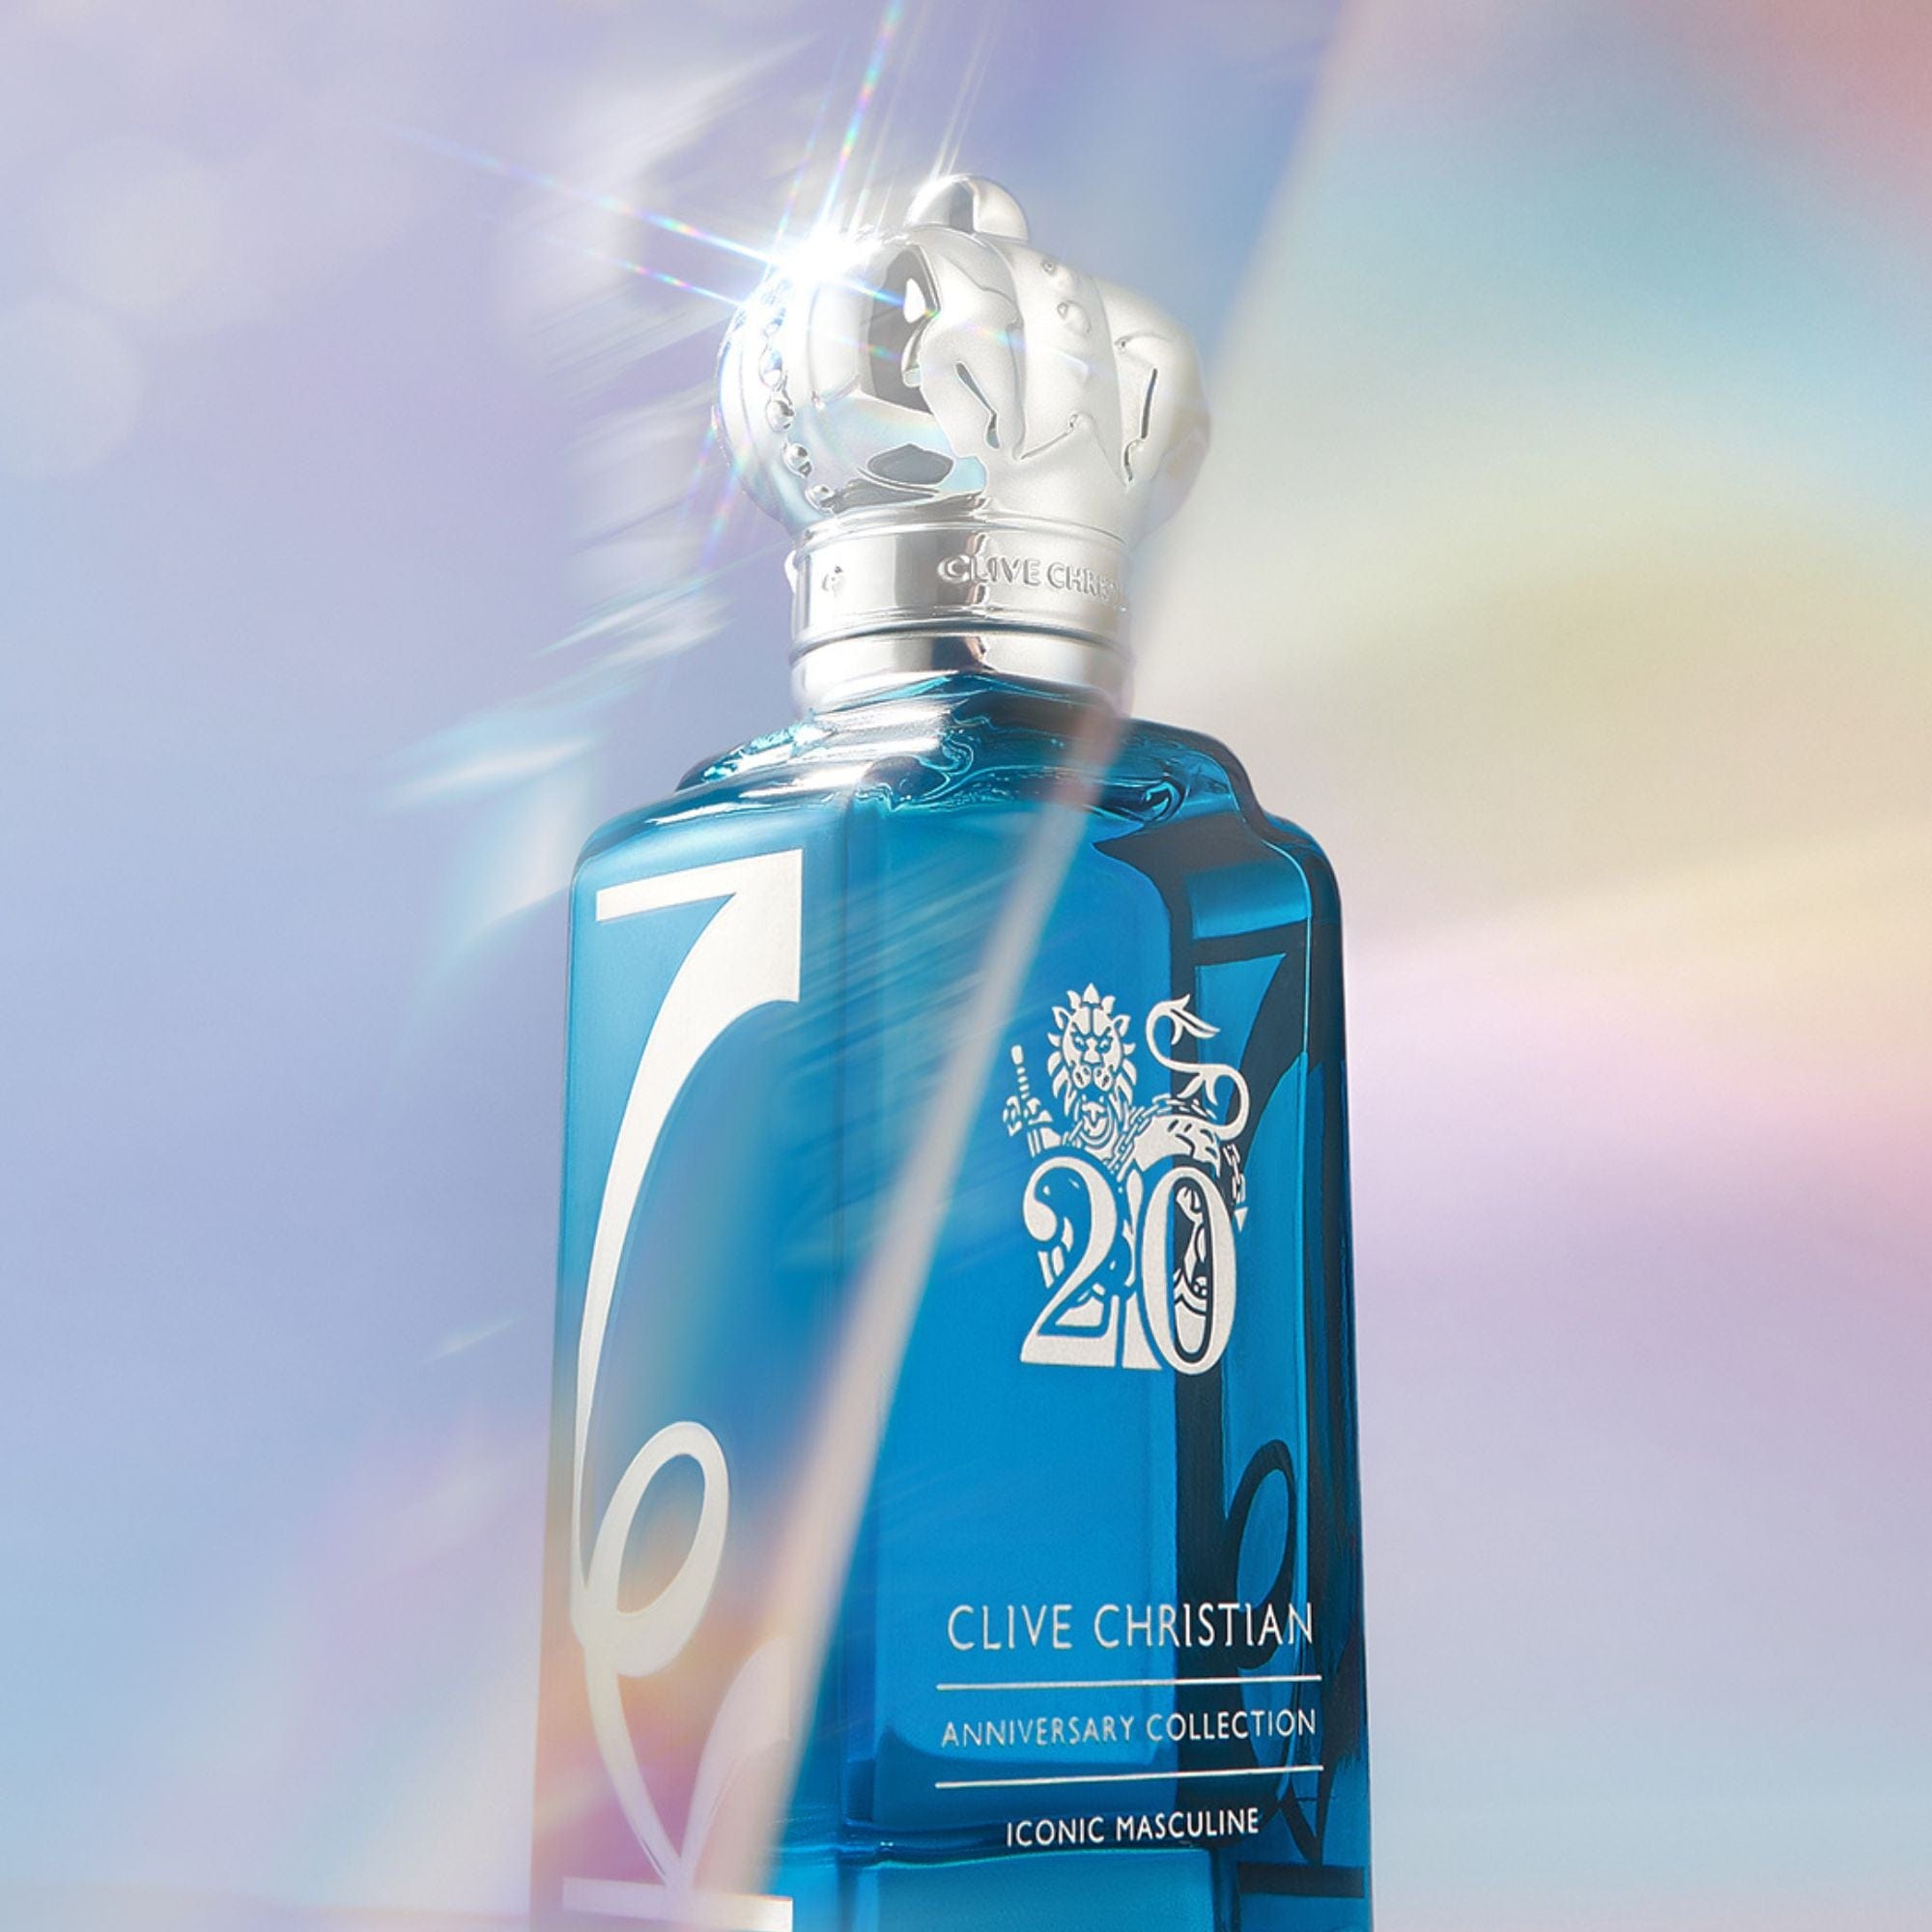 Iconic Masculine Clive Christian Eau de Parfum